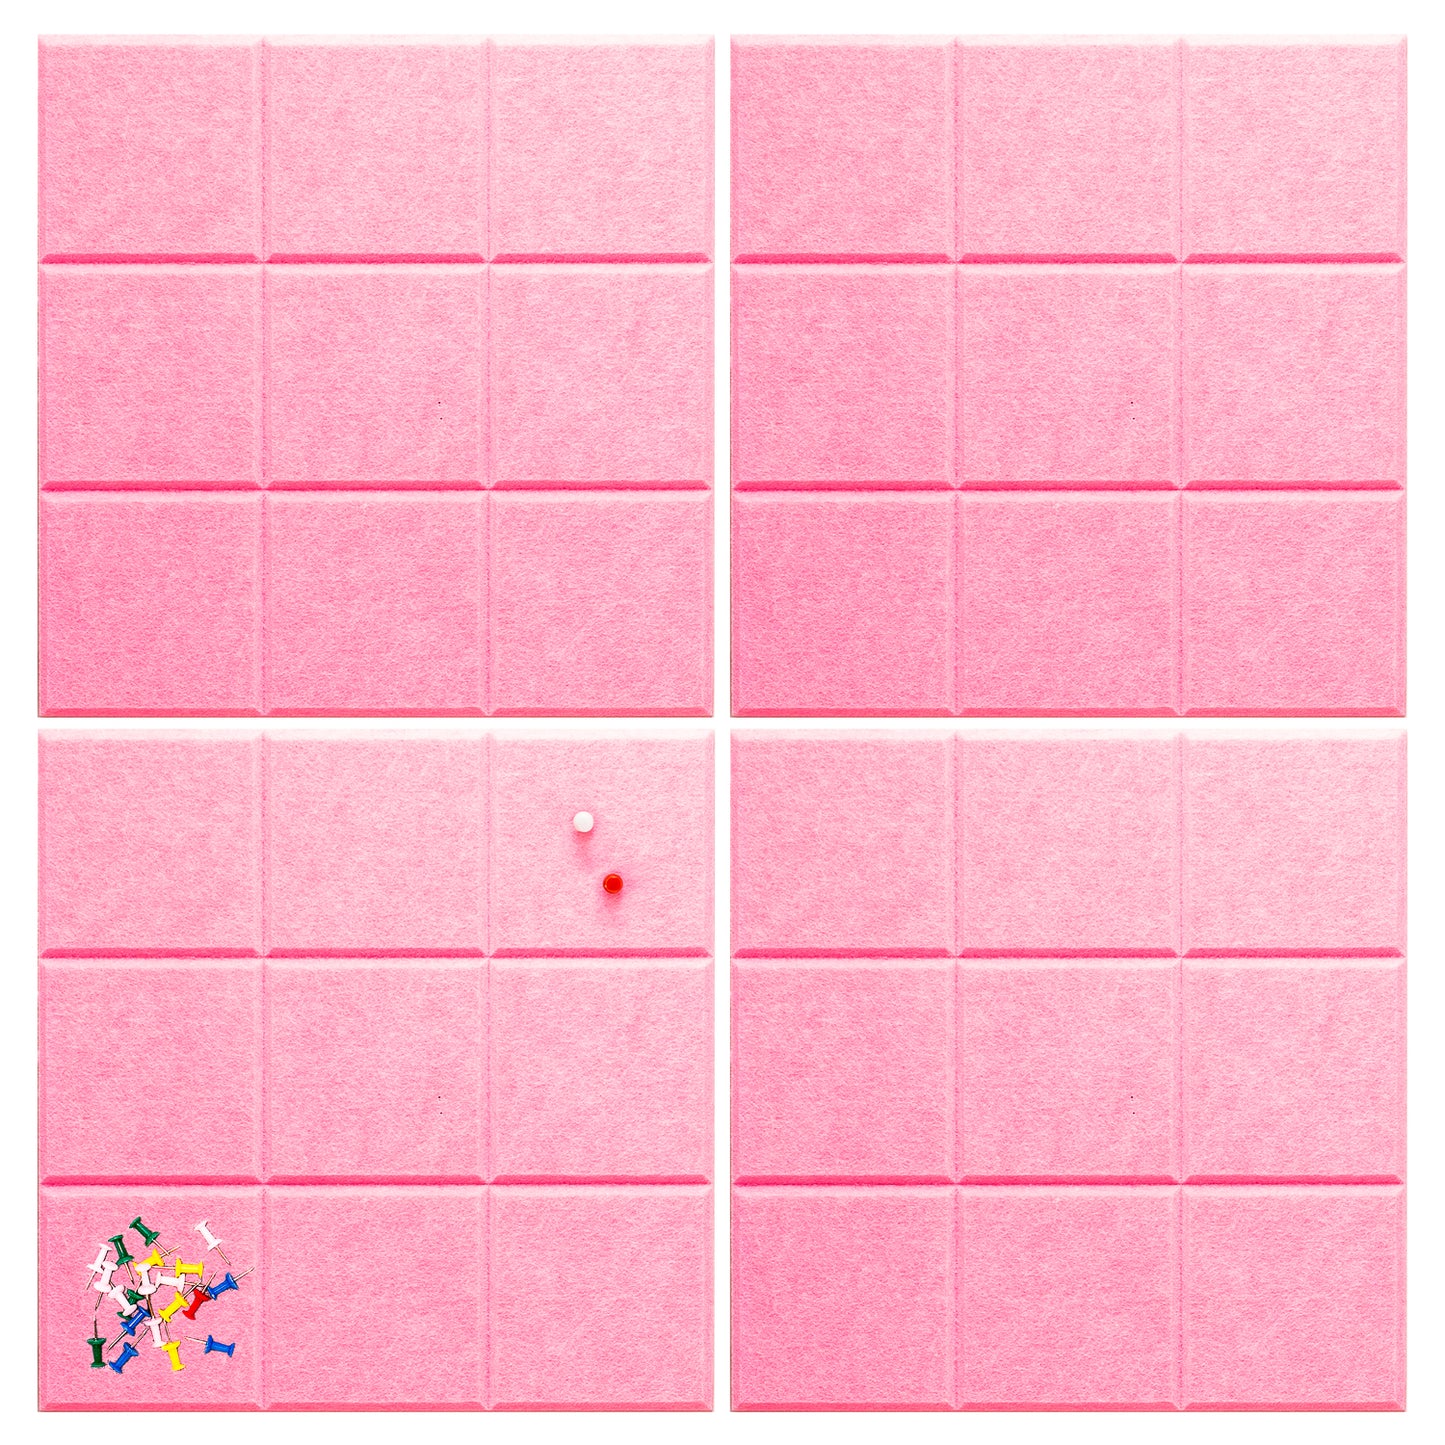 Zelfklevend vilten prikbord (set van 4) - Vierkant/roze